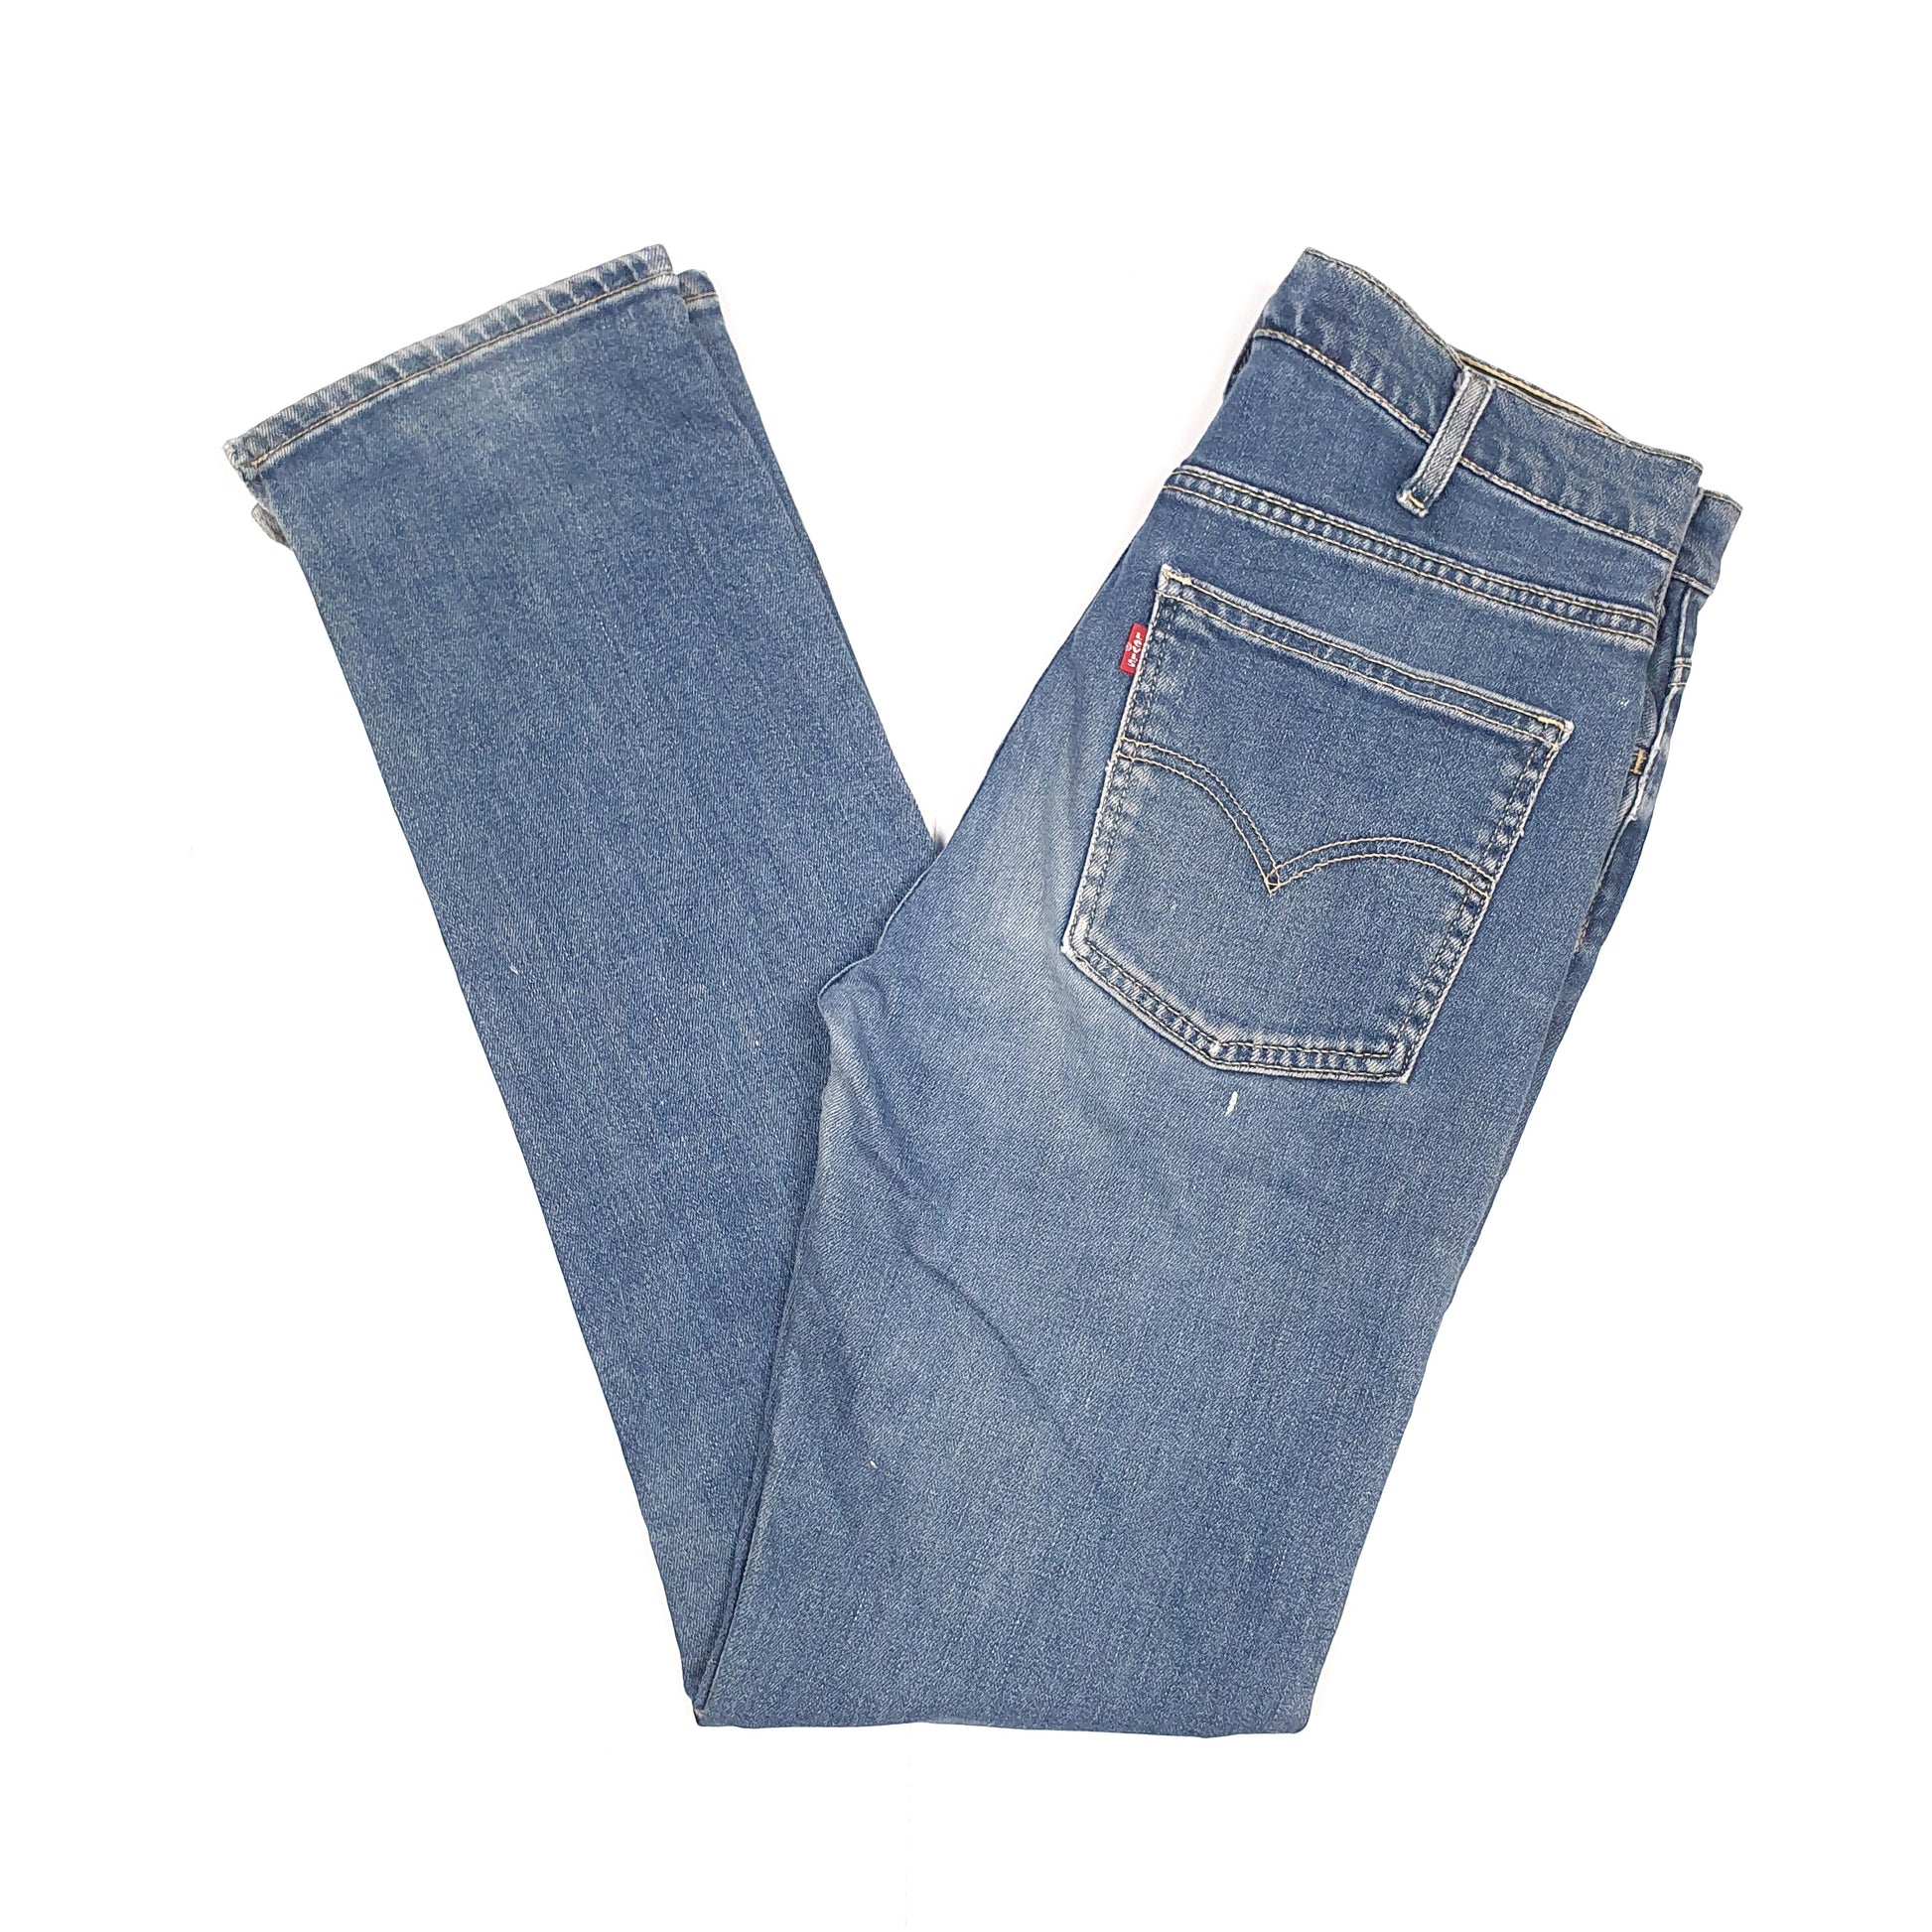 Blue Levis 512 Jeans